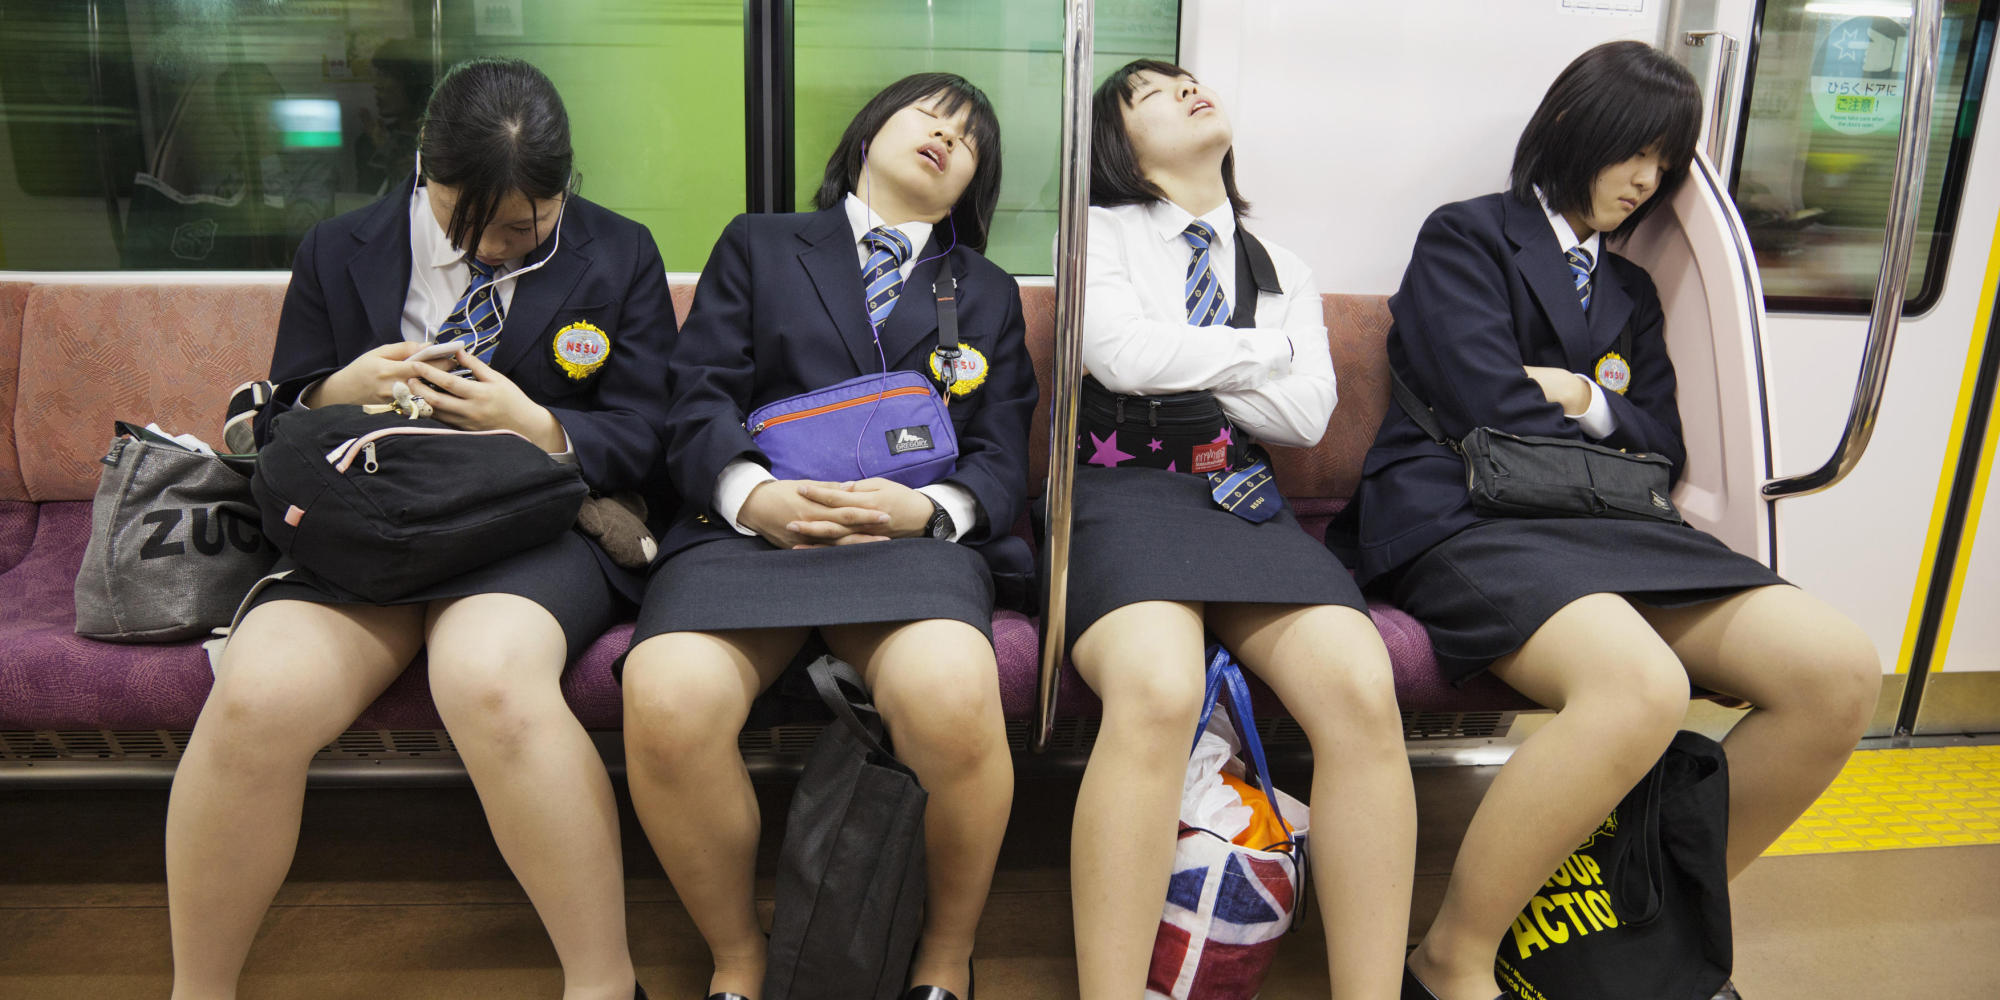 Зрелые японки в автобусе. Японские девочки в транспорте. Японцы в общественном транспорте. Японские девушки в общественном транспорте. Японочка в метро.